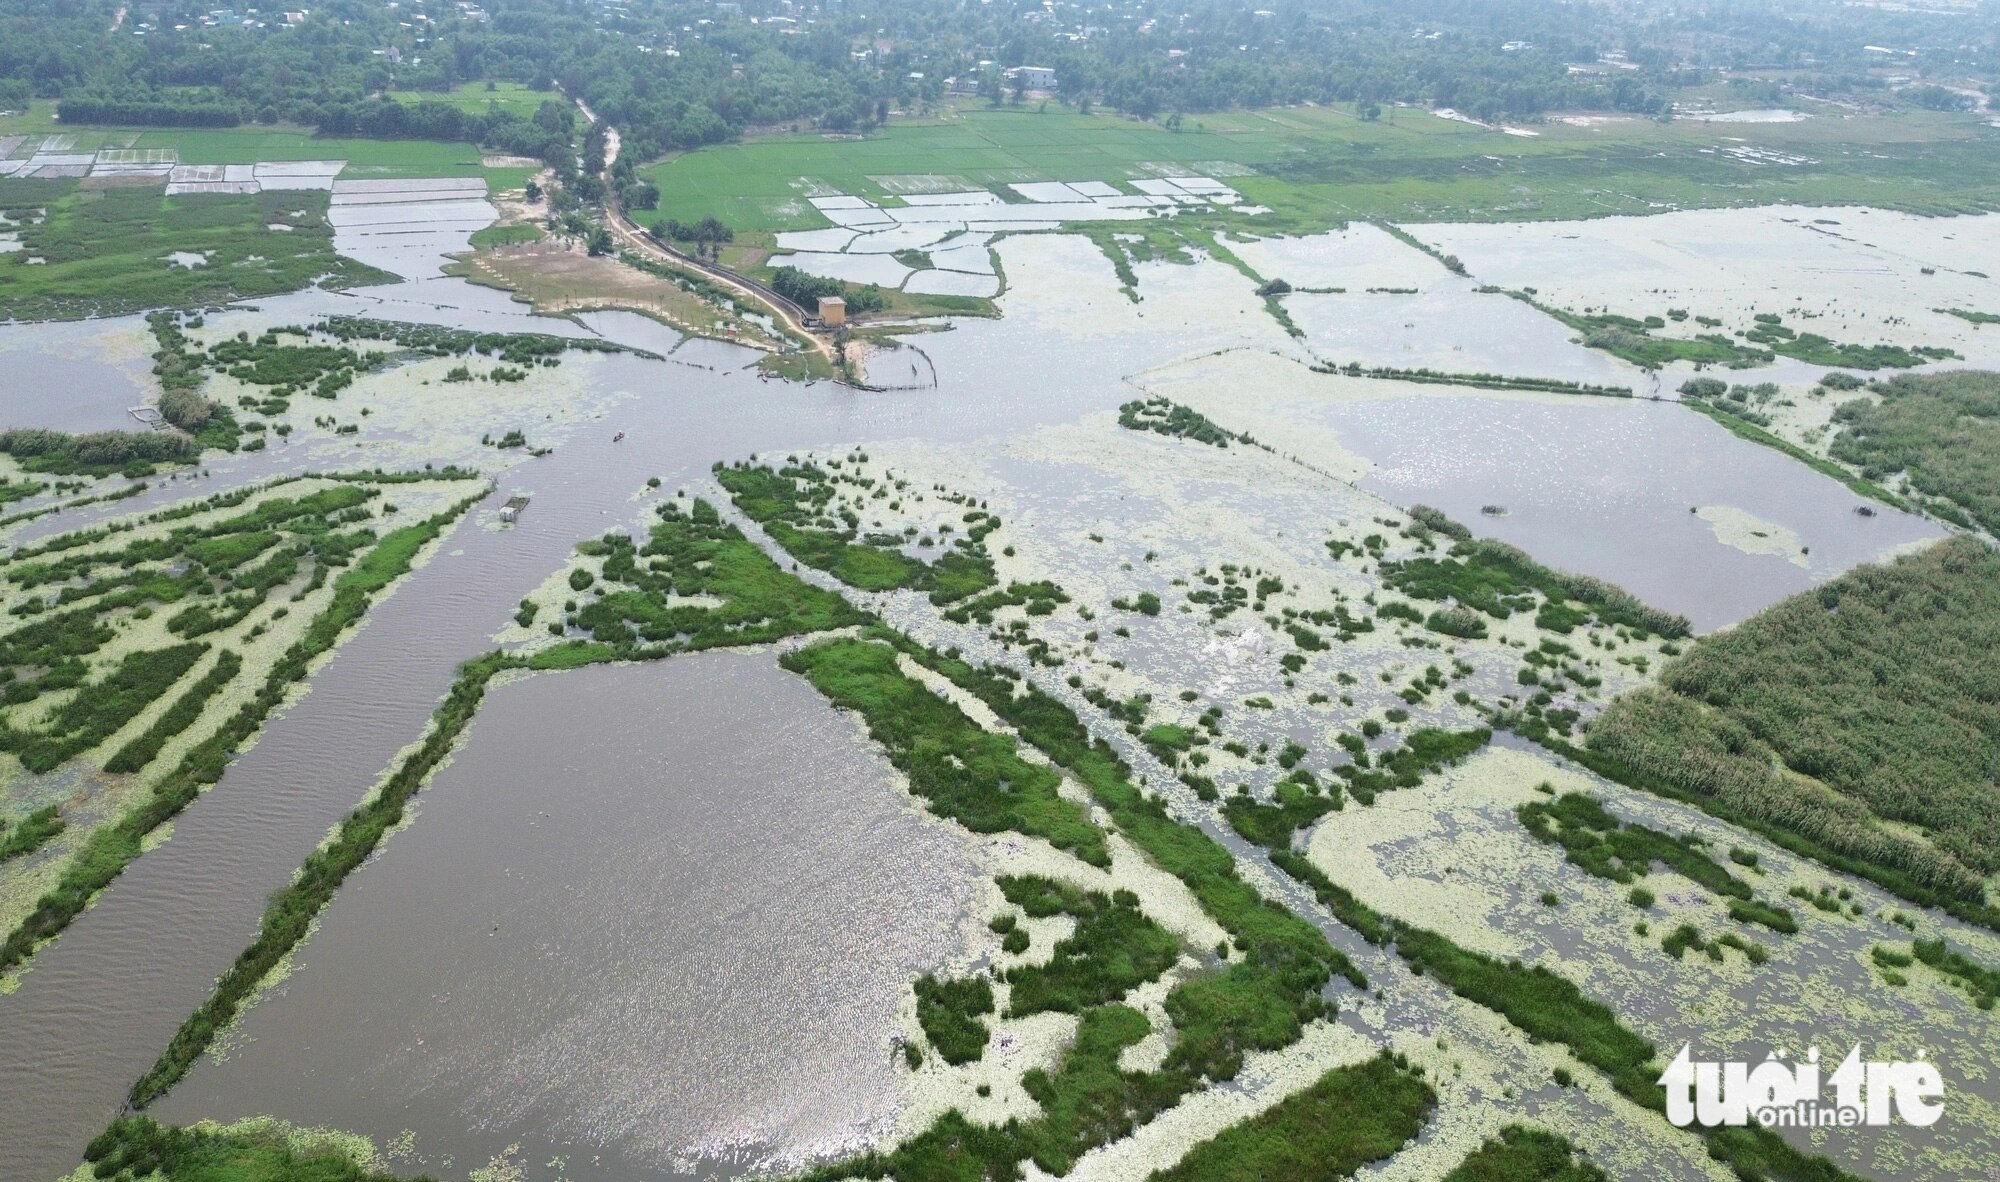 Thành phố Tam Kỳ kiến nghị tỉnh lập hồ sơ để hình thành khu đất ngập nước và đa dạng sinh học sông Đầm và hướng đến một công viên thiên nhiên ở sông Đầm - Ảnh: LÊ TRUNG